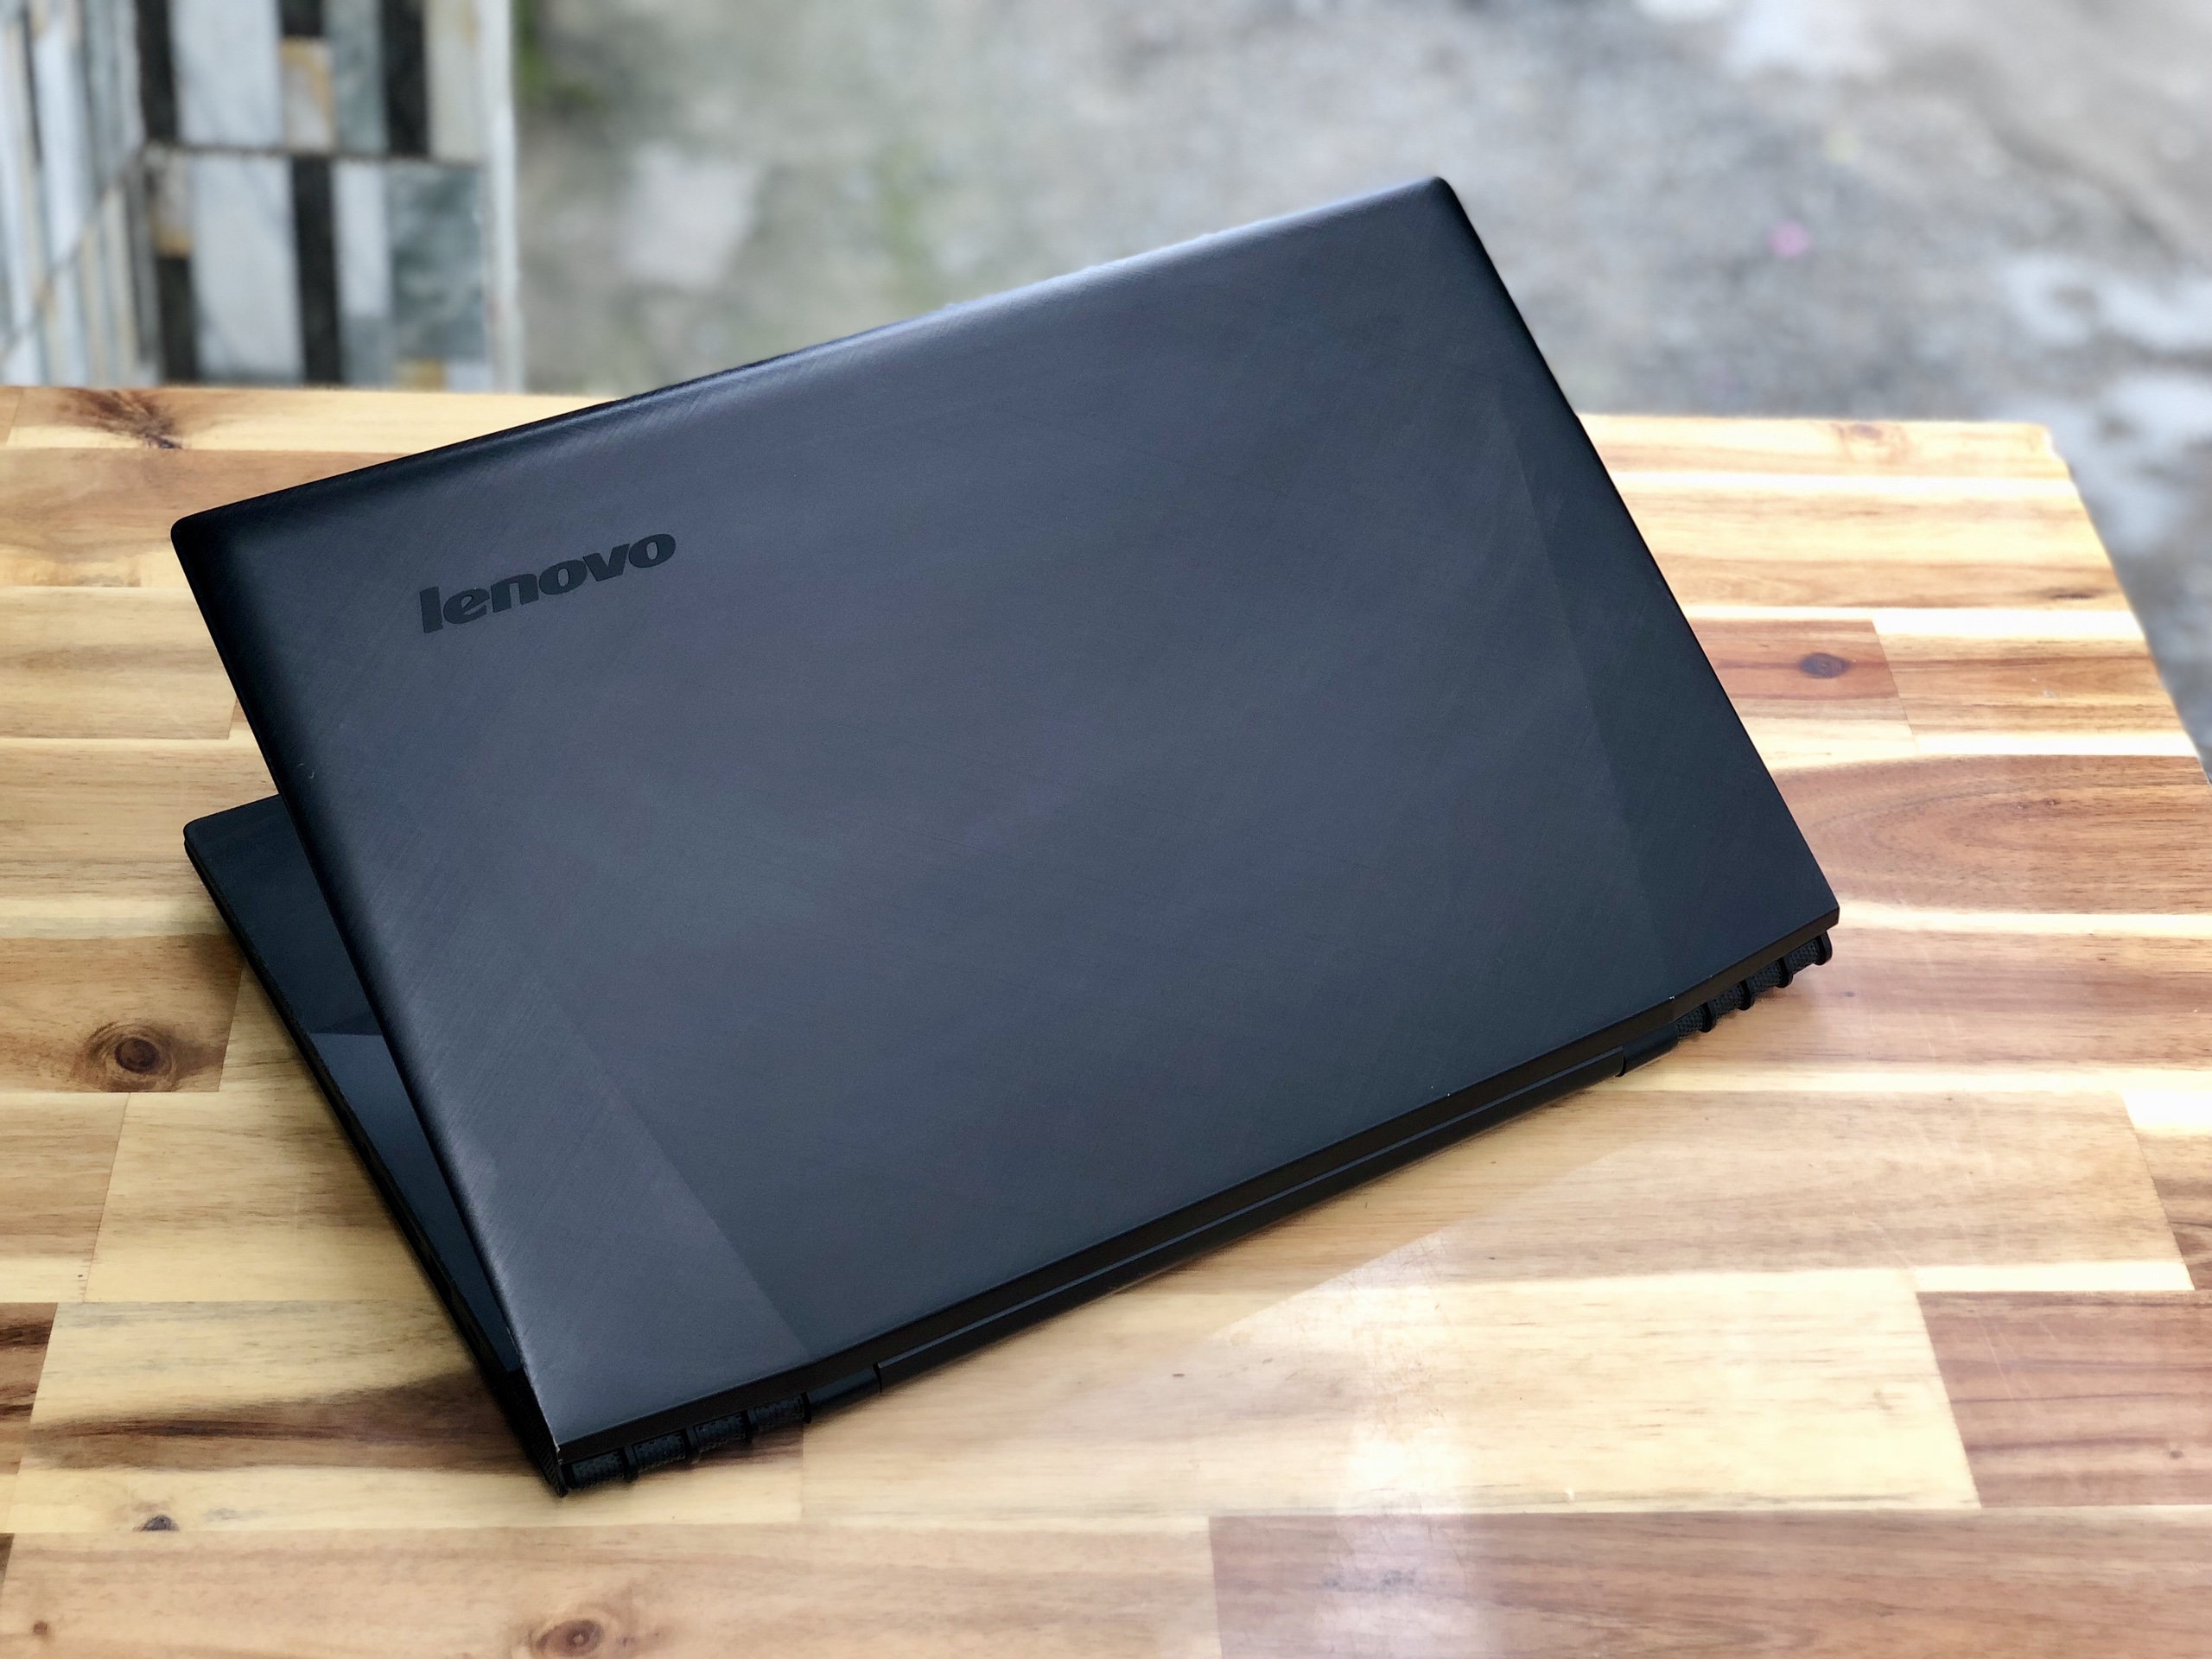 Laptop Lenovo Gaming Y50-70, I7 4720HQ 8G SSD240 GTX960M 4G Full HD Đẹp zin 100% giá rẻ4